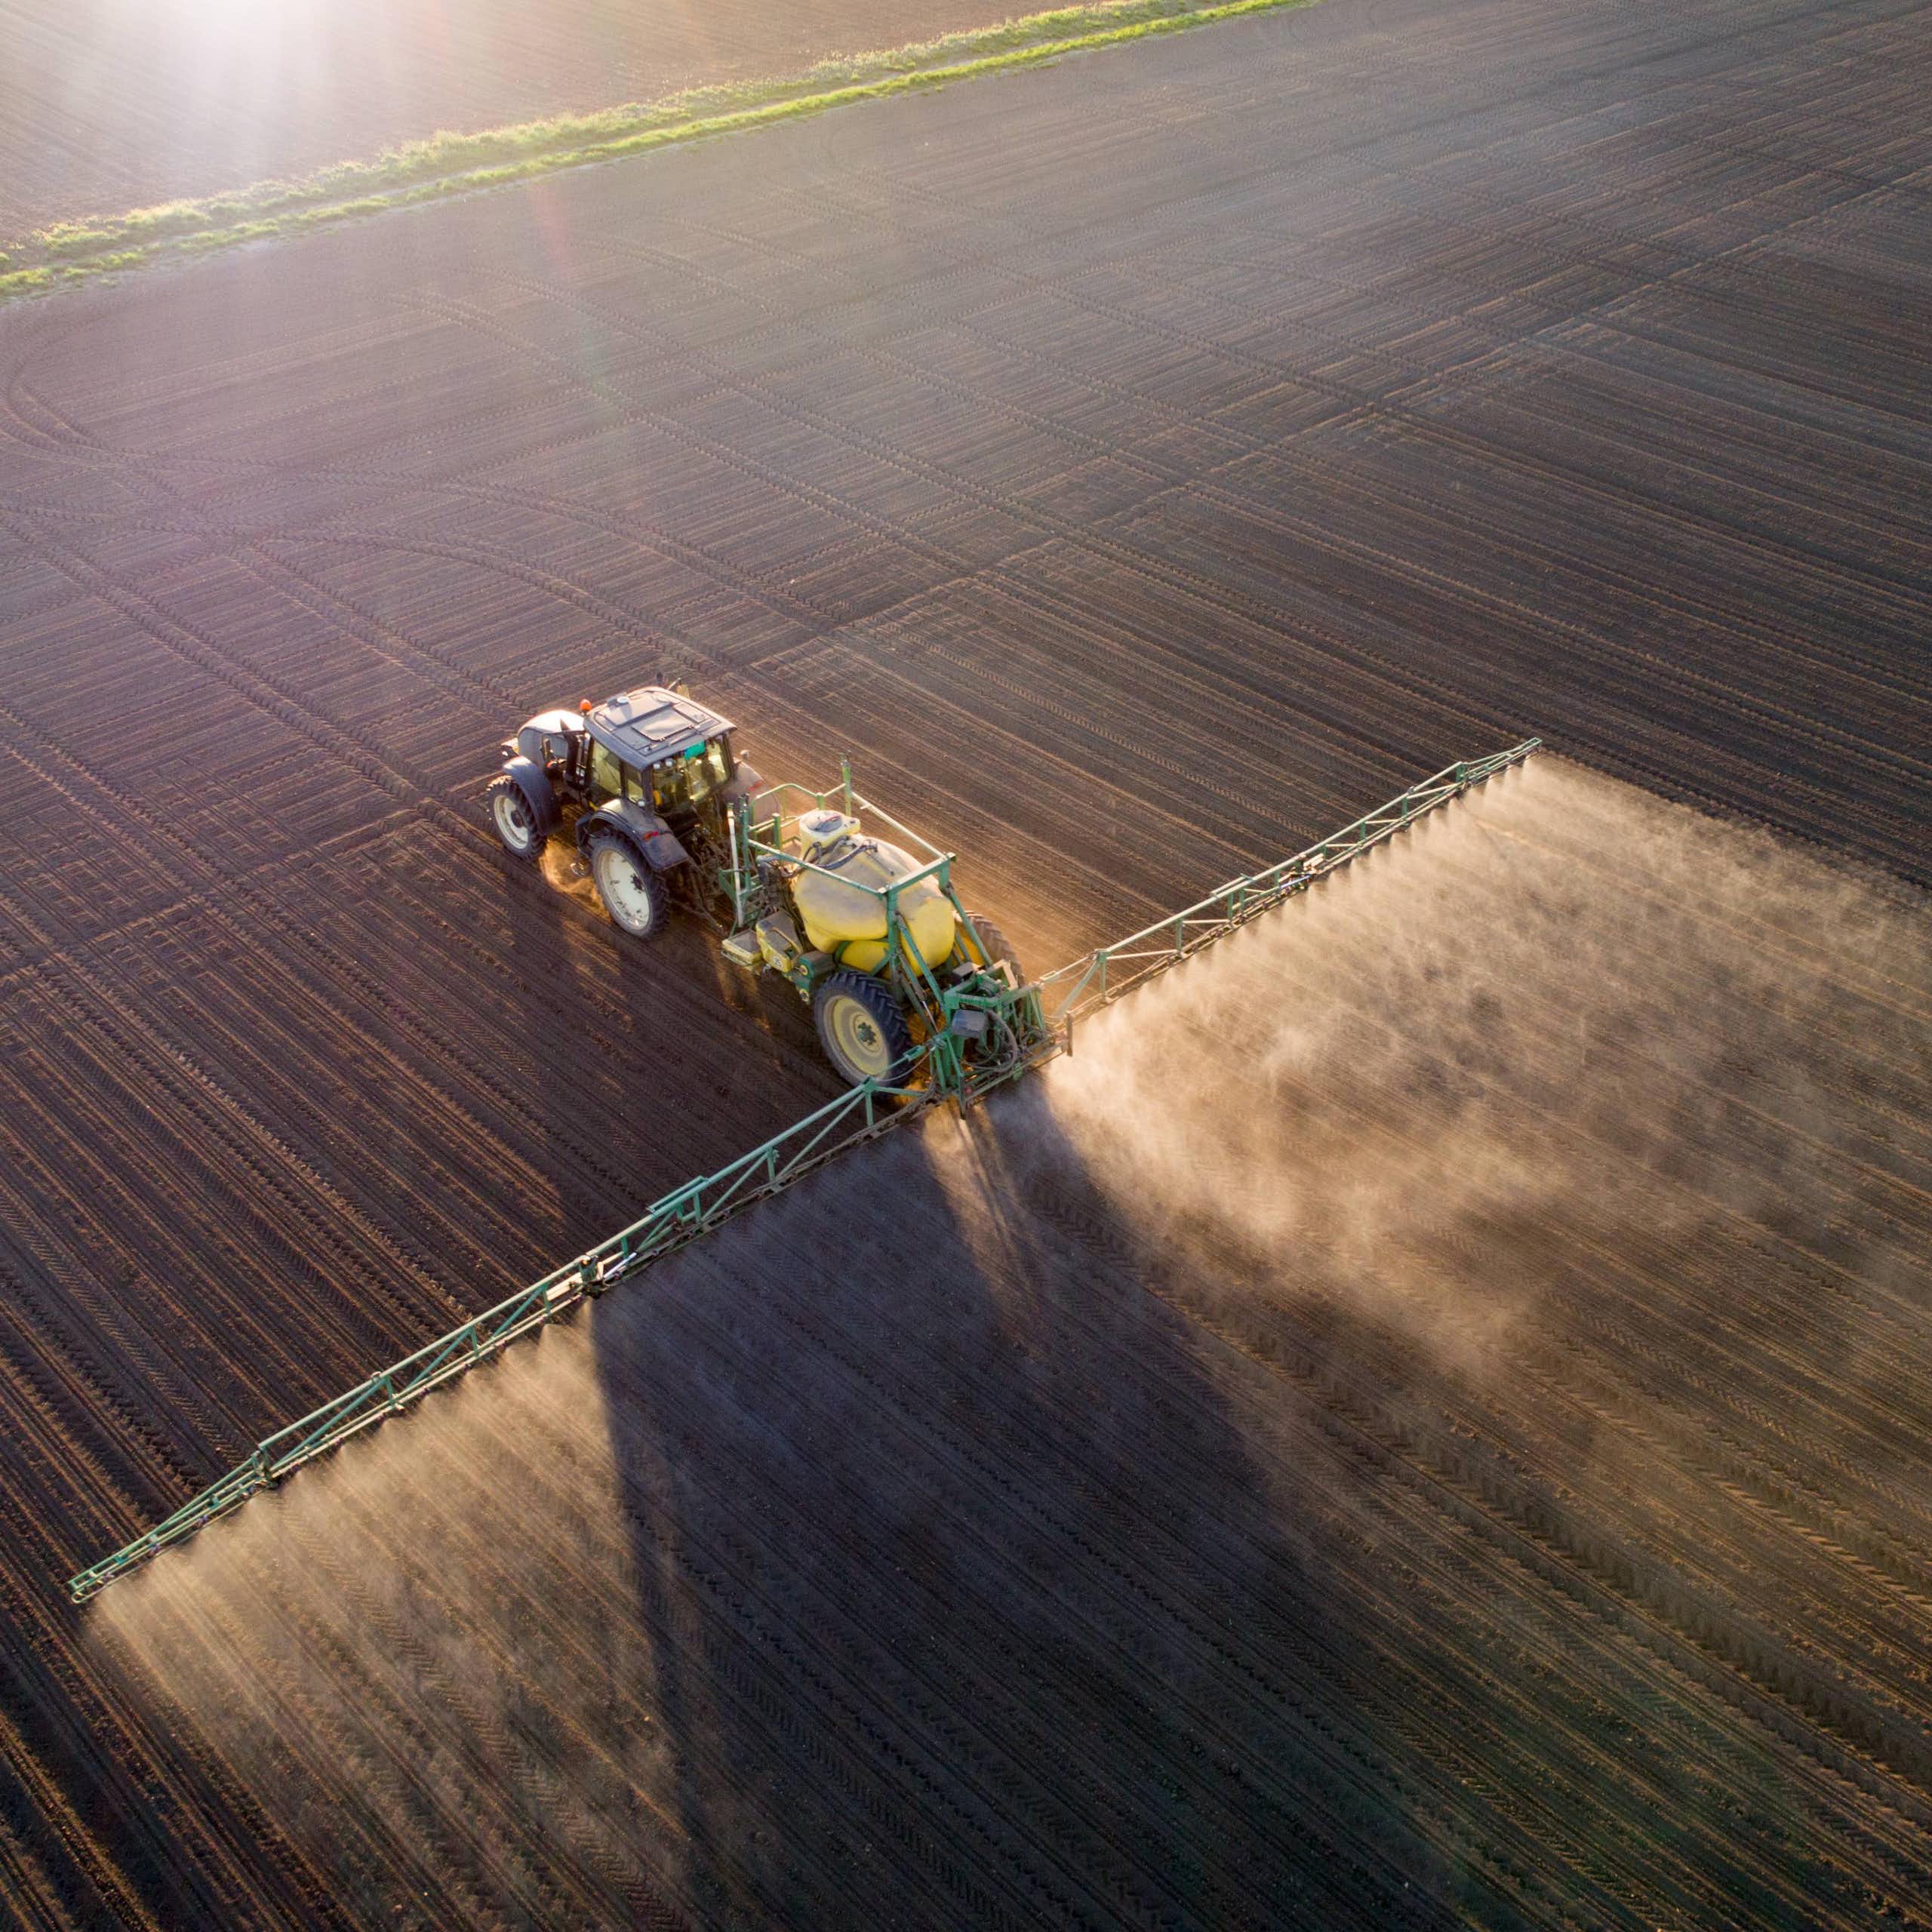 Menos fertilizantes y más legumbres: estrategias para reducir las emisiones de la agricultura y la ganadería